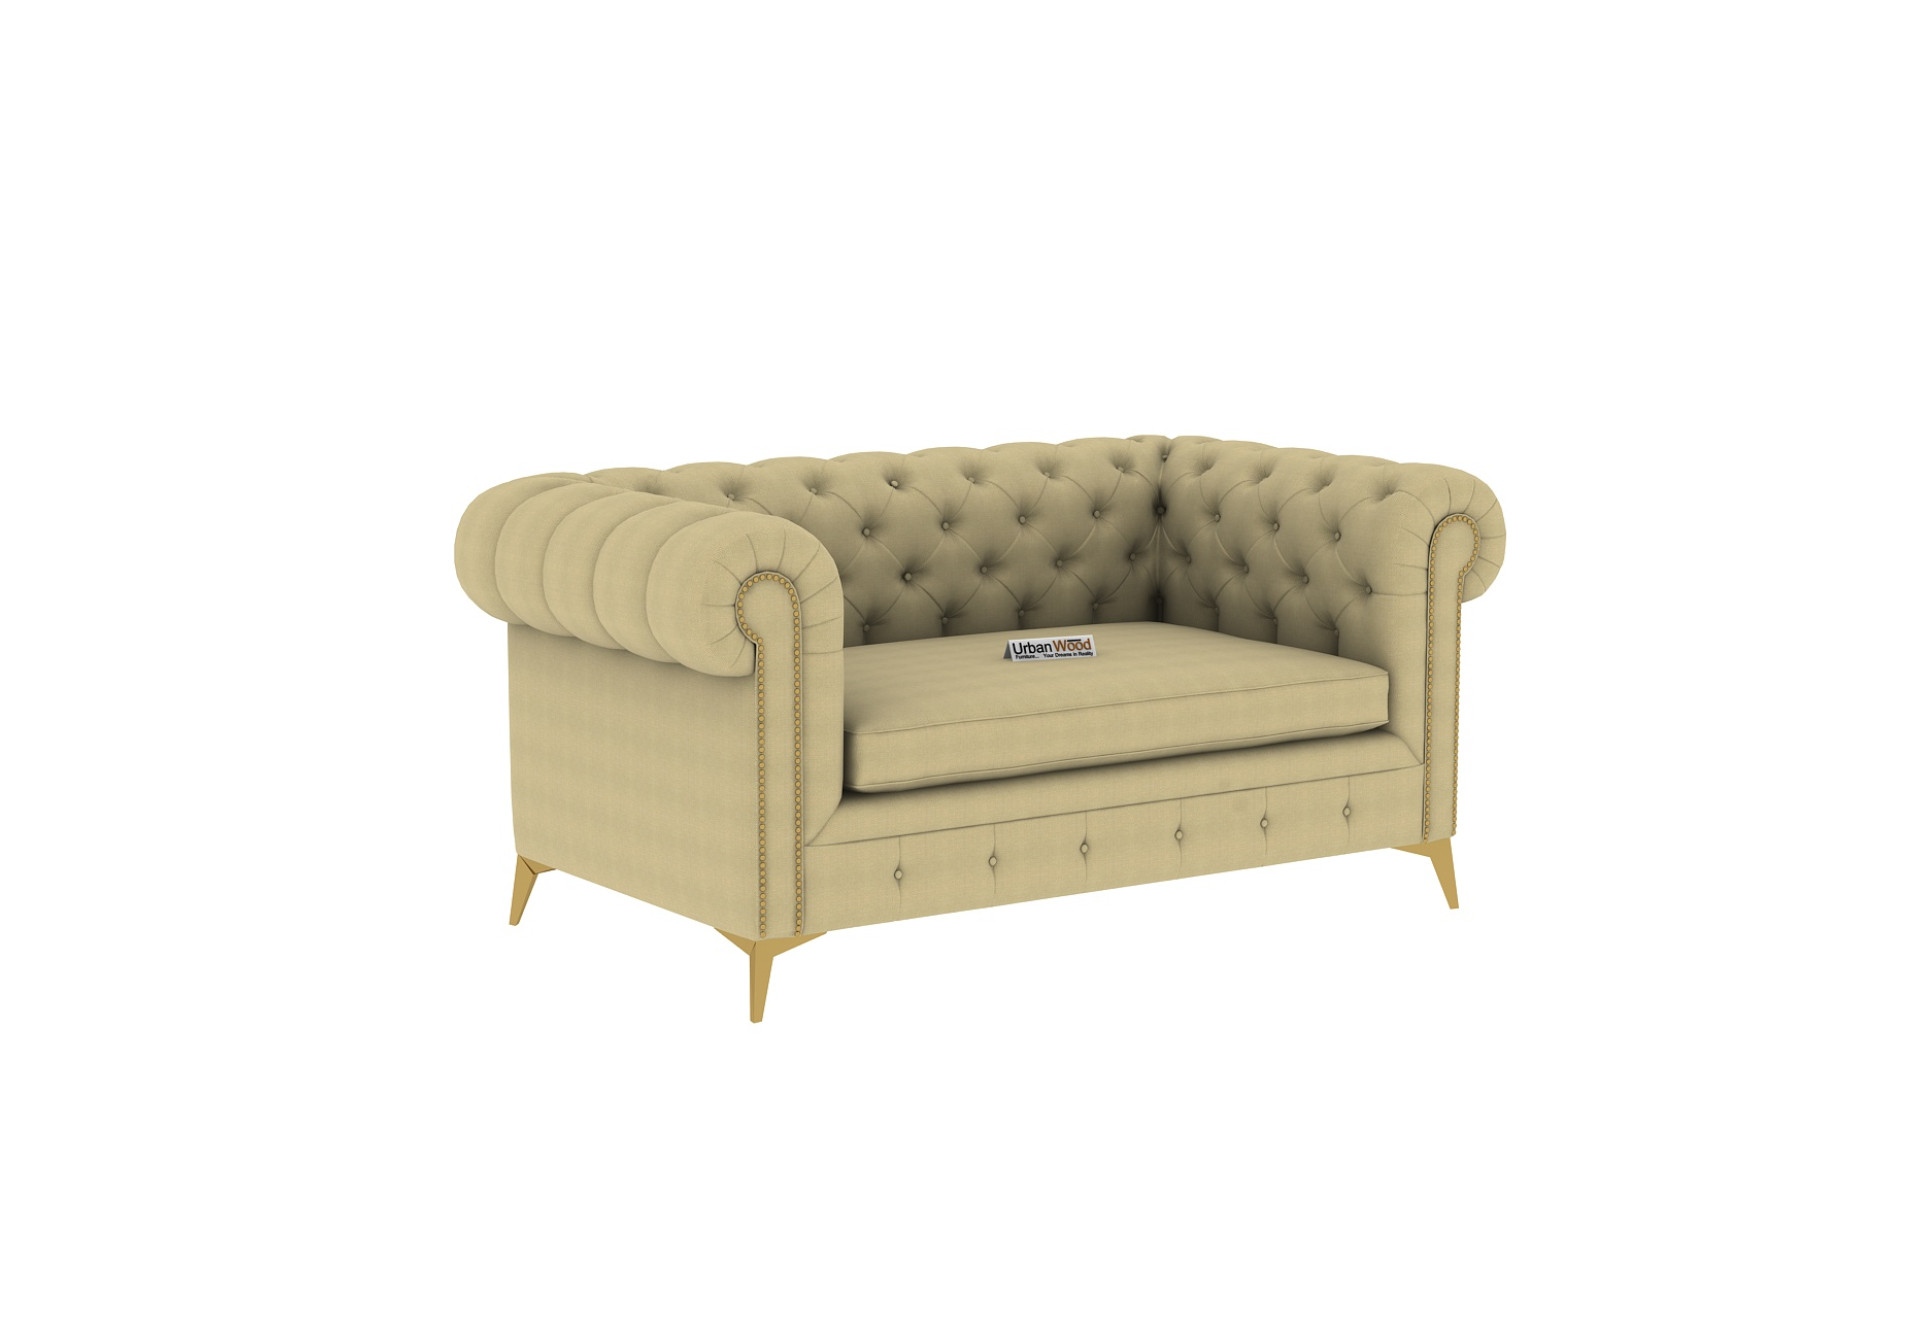 Regal 2+1+1 Seater Fabric Sofa (Cotton, Sepia Cream)